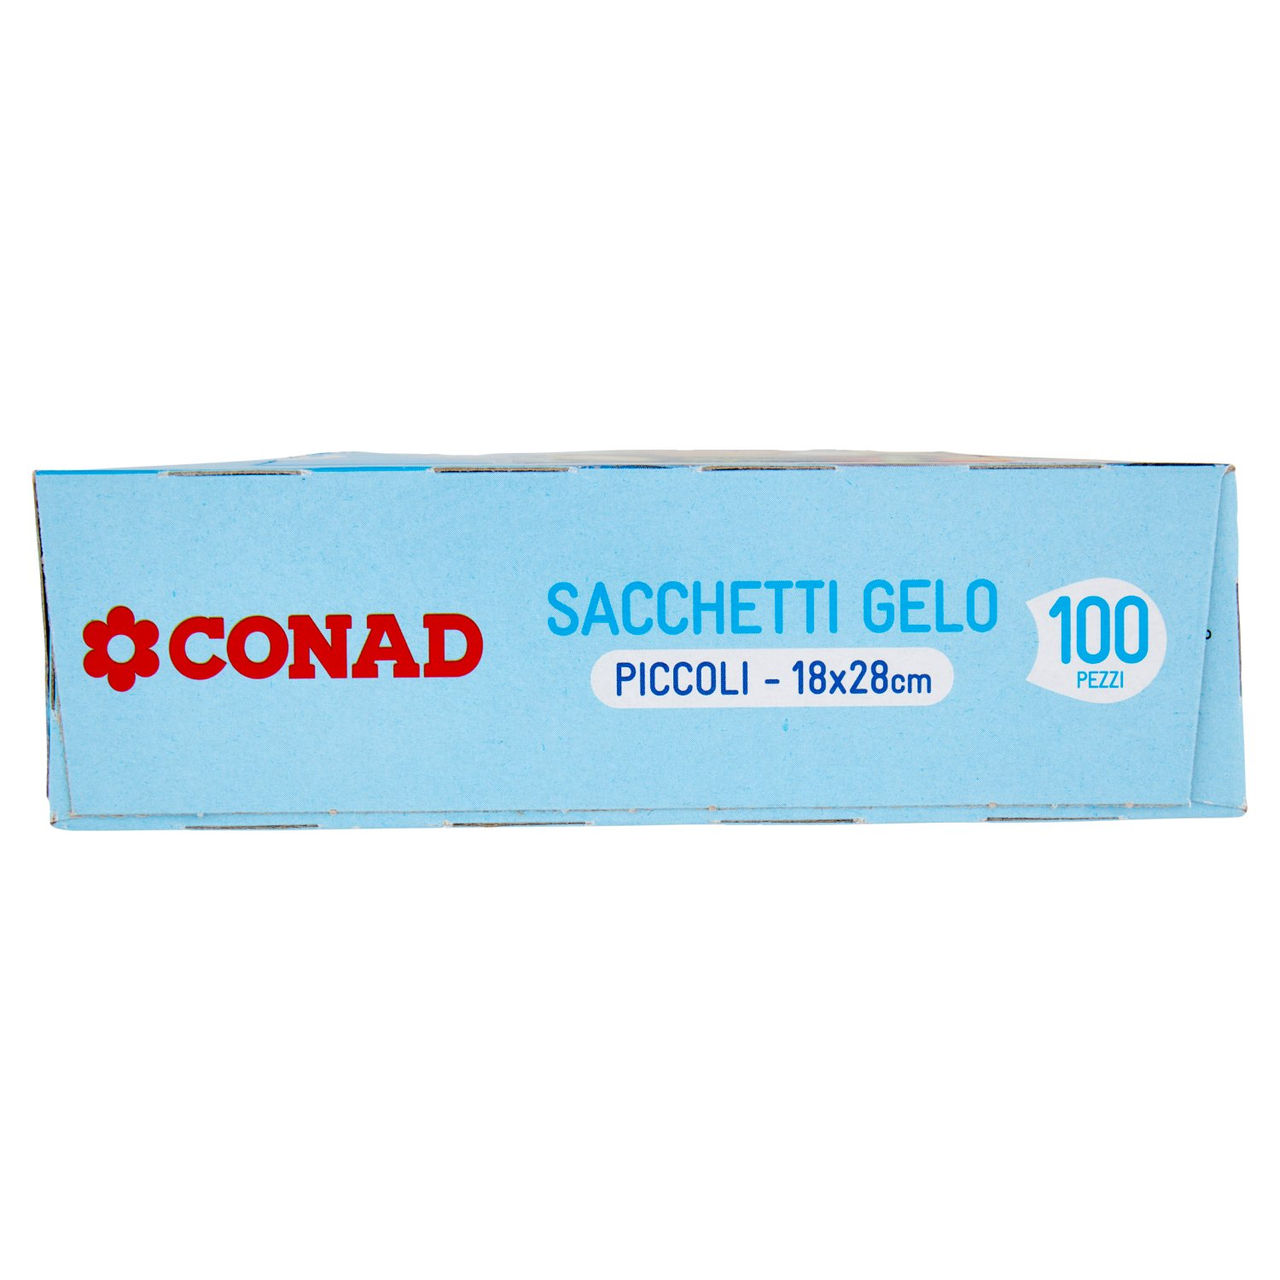 Sacchetti Gelo Piccoli 18x28cm Conad online